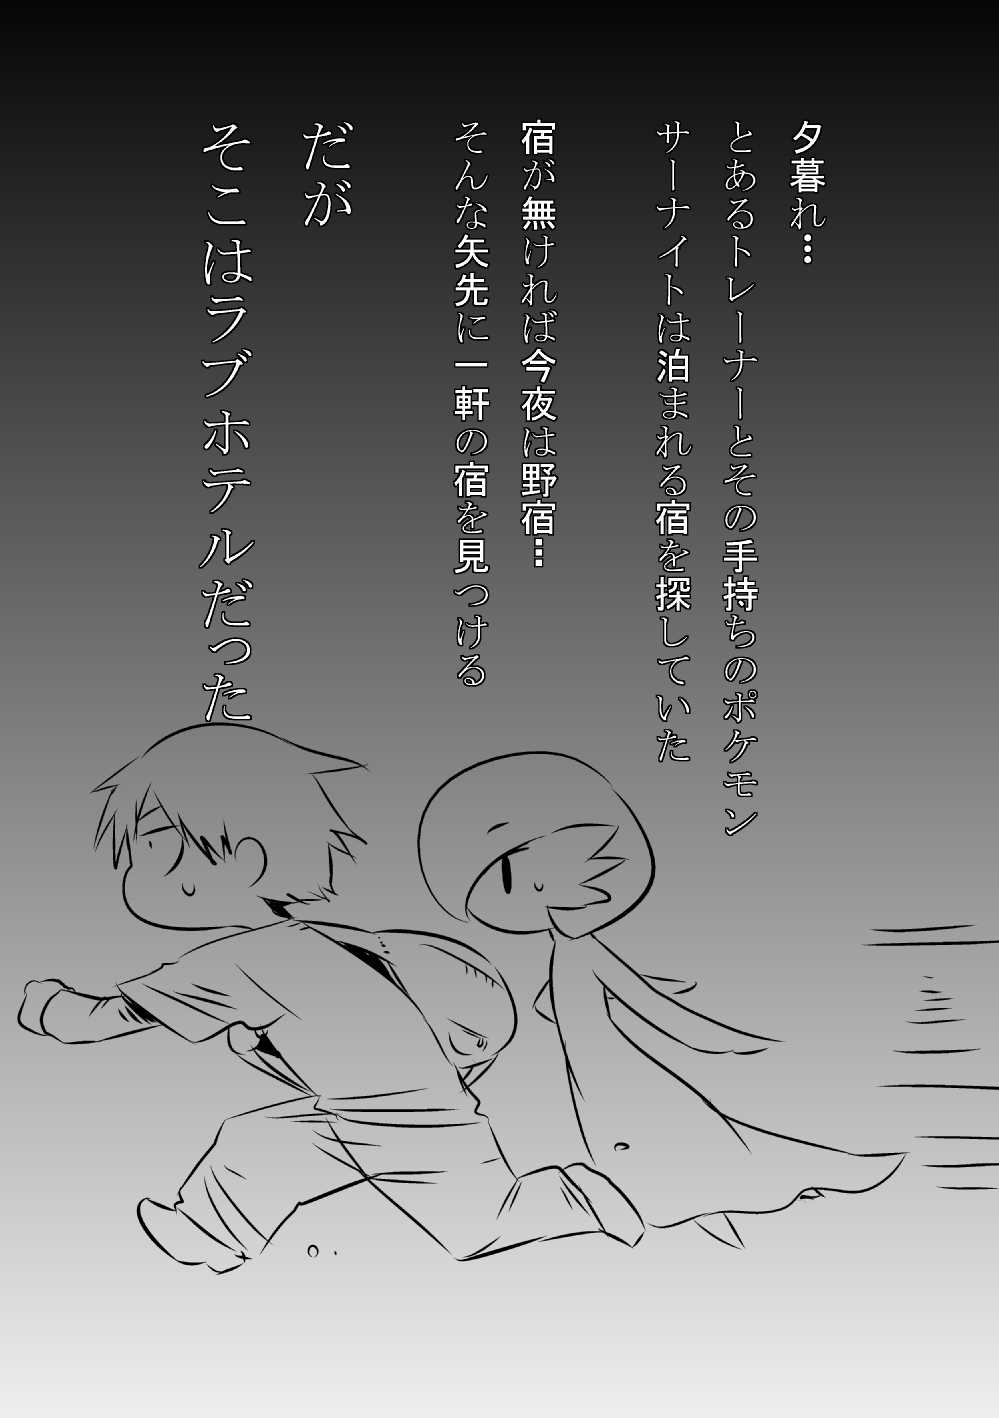 [Mizone] Trainer Temochi Pokemon ga Love Hotel ni Tomatta Baai (Pokemon) [みぞね] トレーナーと手持ちポケモンがラブホテルに泊まった場合 (ポケットモンスター)